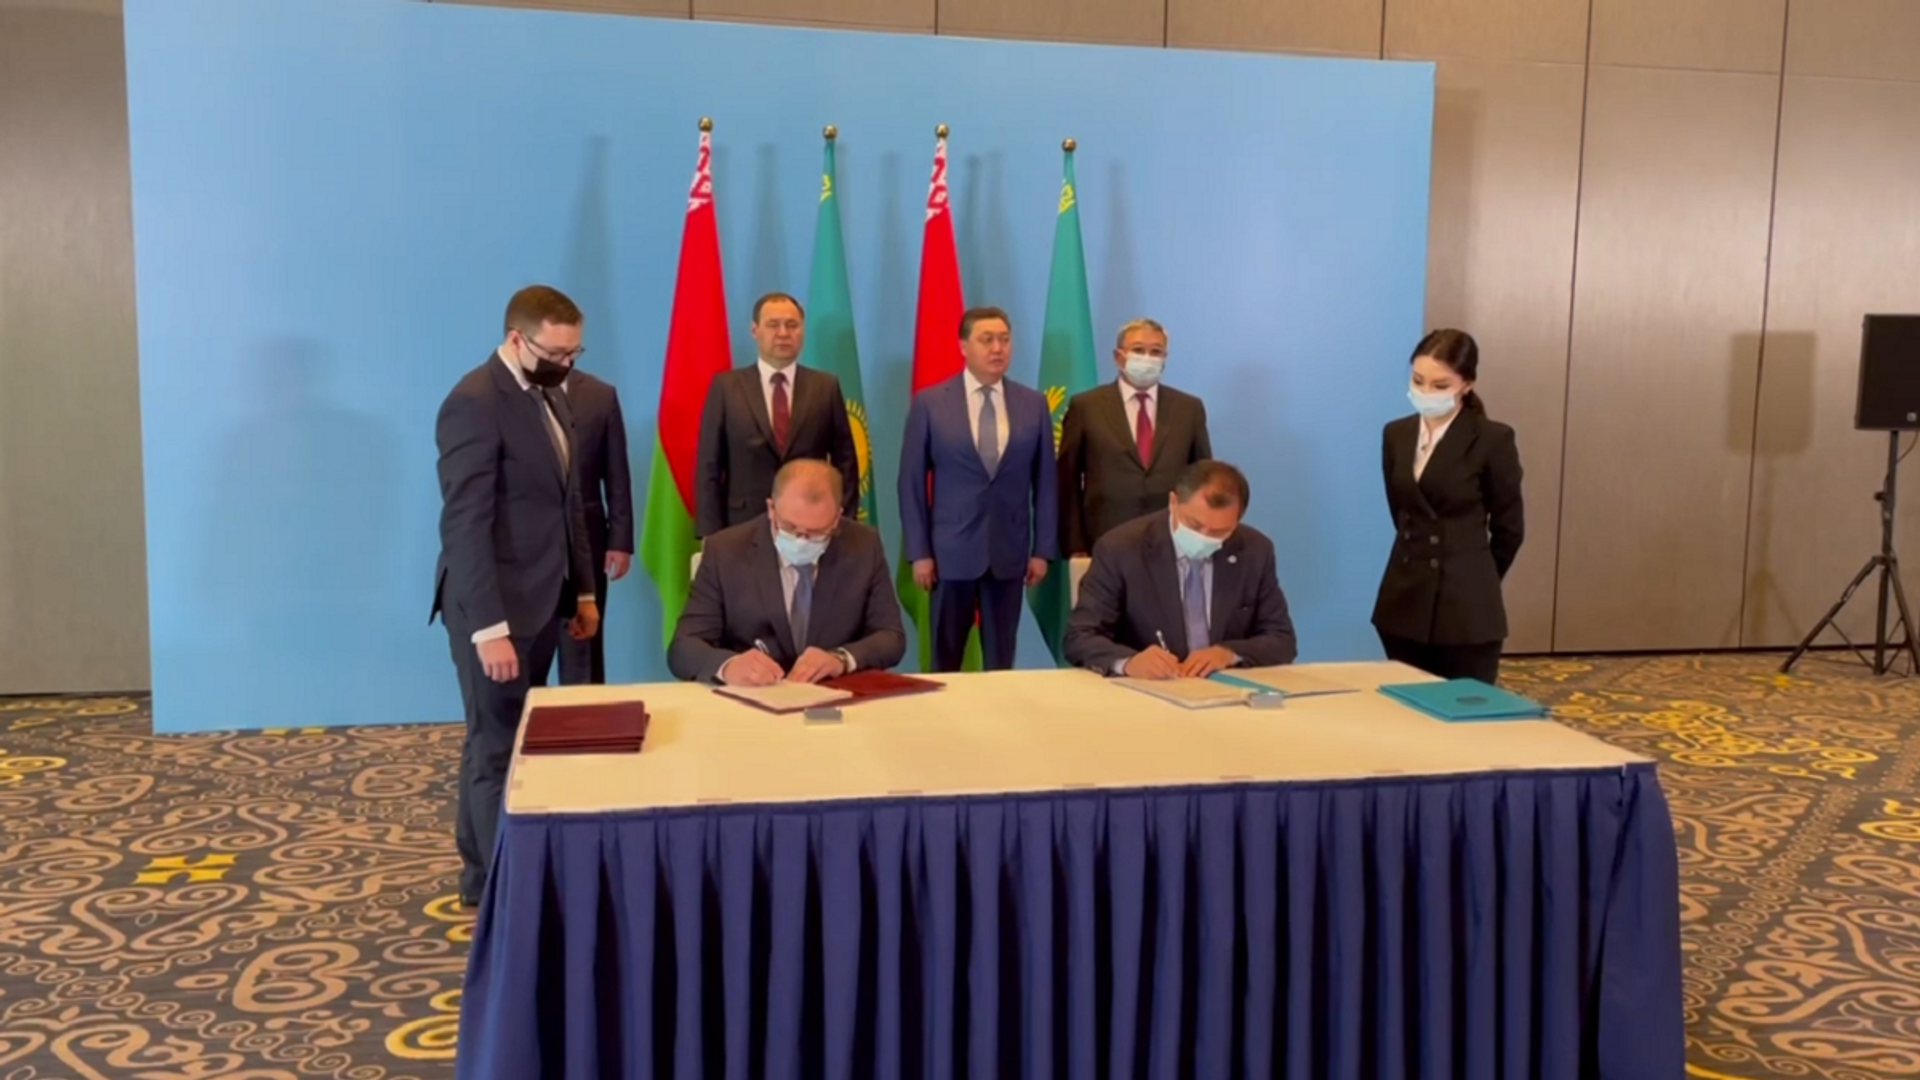 Беларусь и Казахстан подписали соглашение о сотрудничестве в области поставок нефти и нефтепродуктов  - Sputnik Беларусь, 1920, 28.06.2021